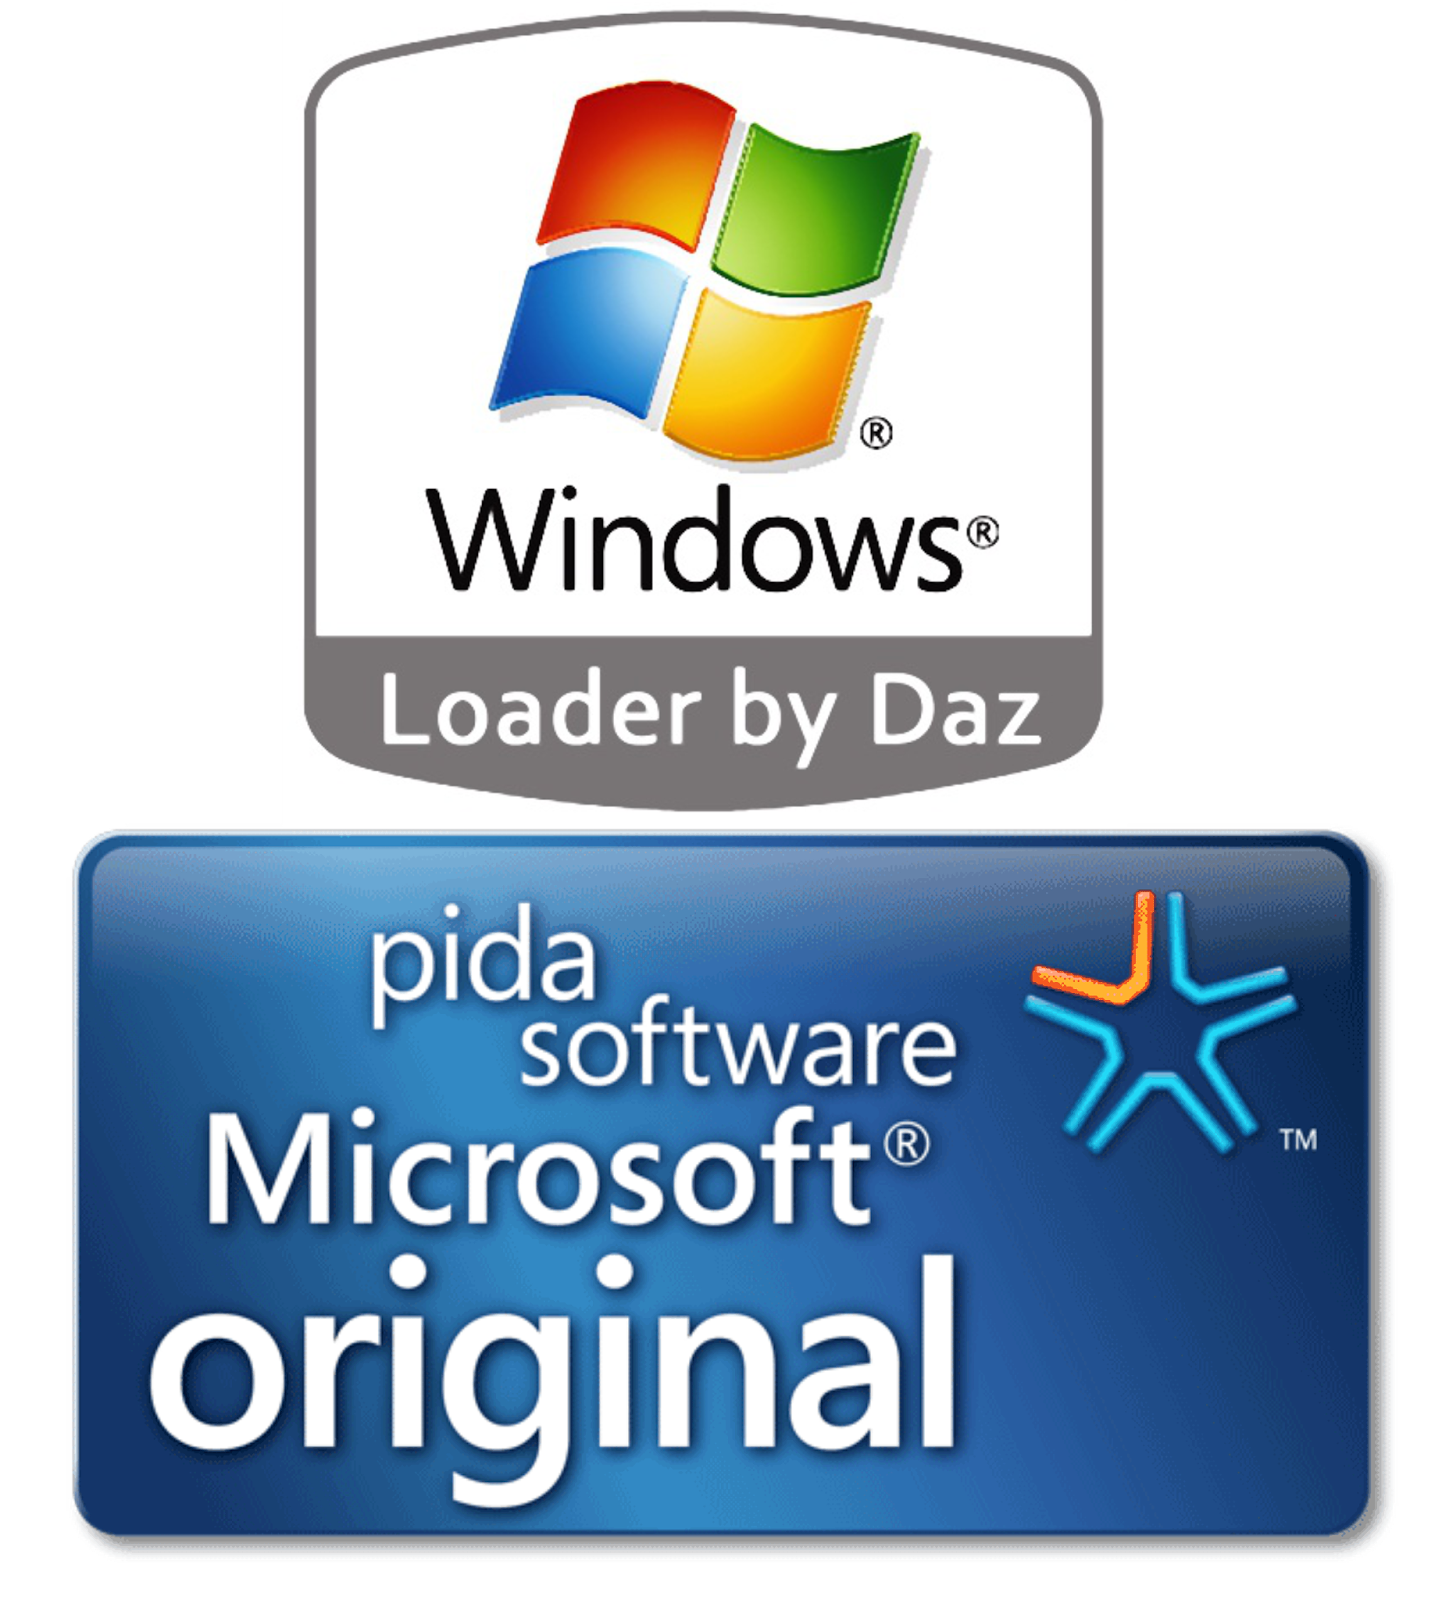 Windows 7 Loader V222 By DaZ Full Free Download